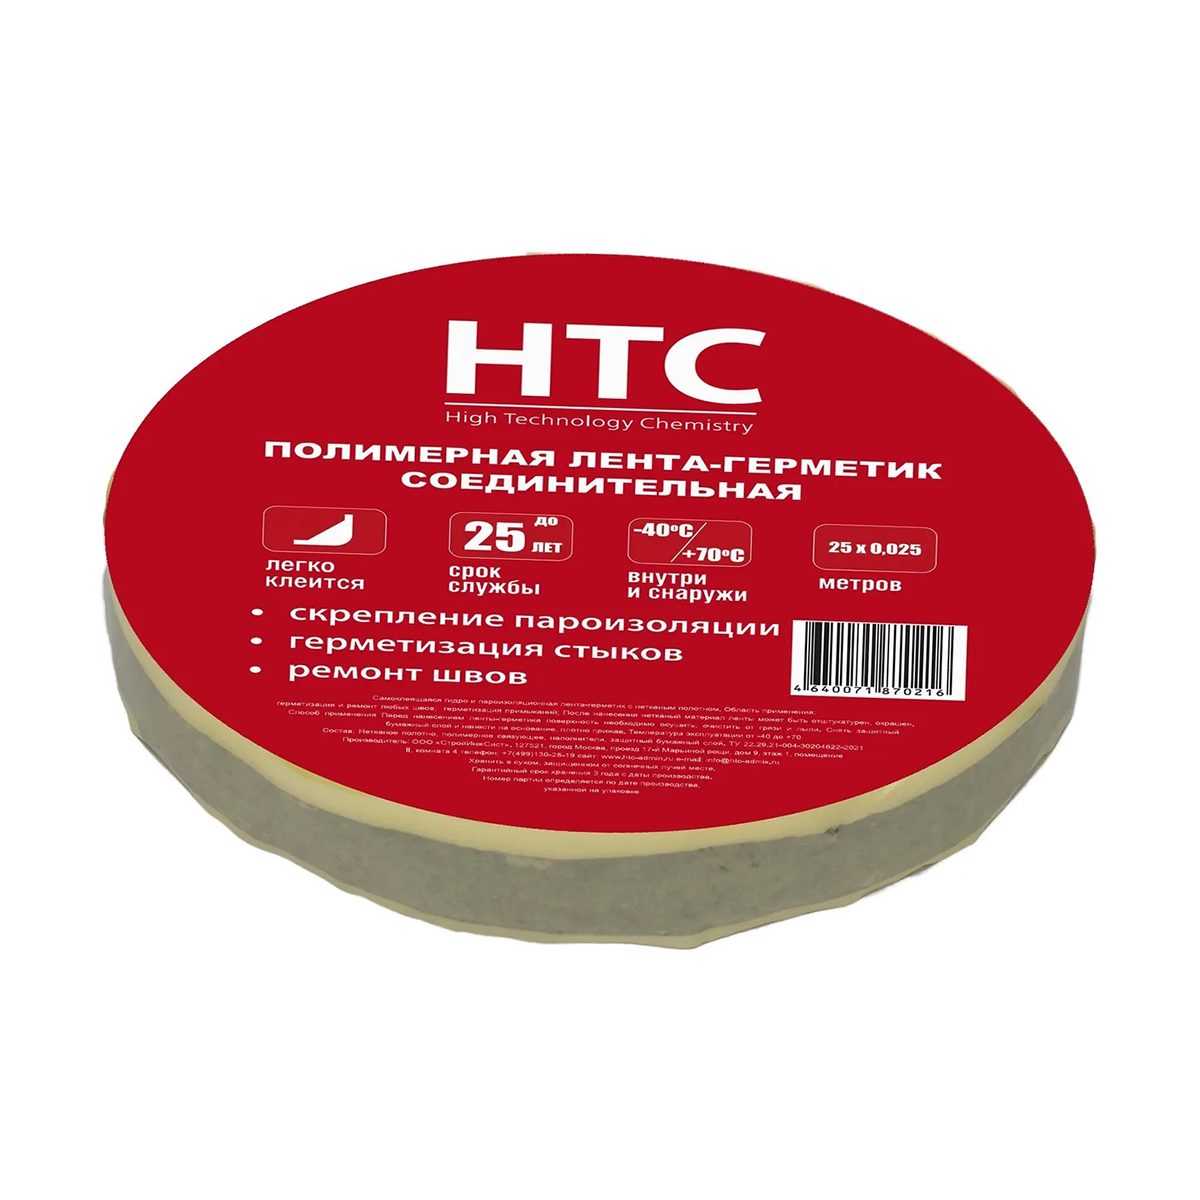 Самоклеящаяся полимерная лента-герметик HTC, с нетканым полотном, 25 м x 2,5 см